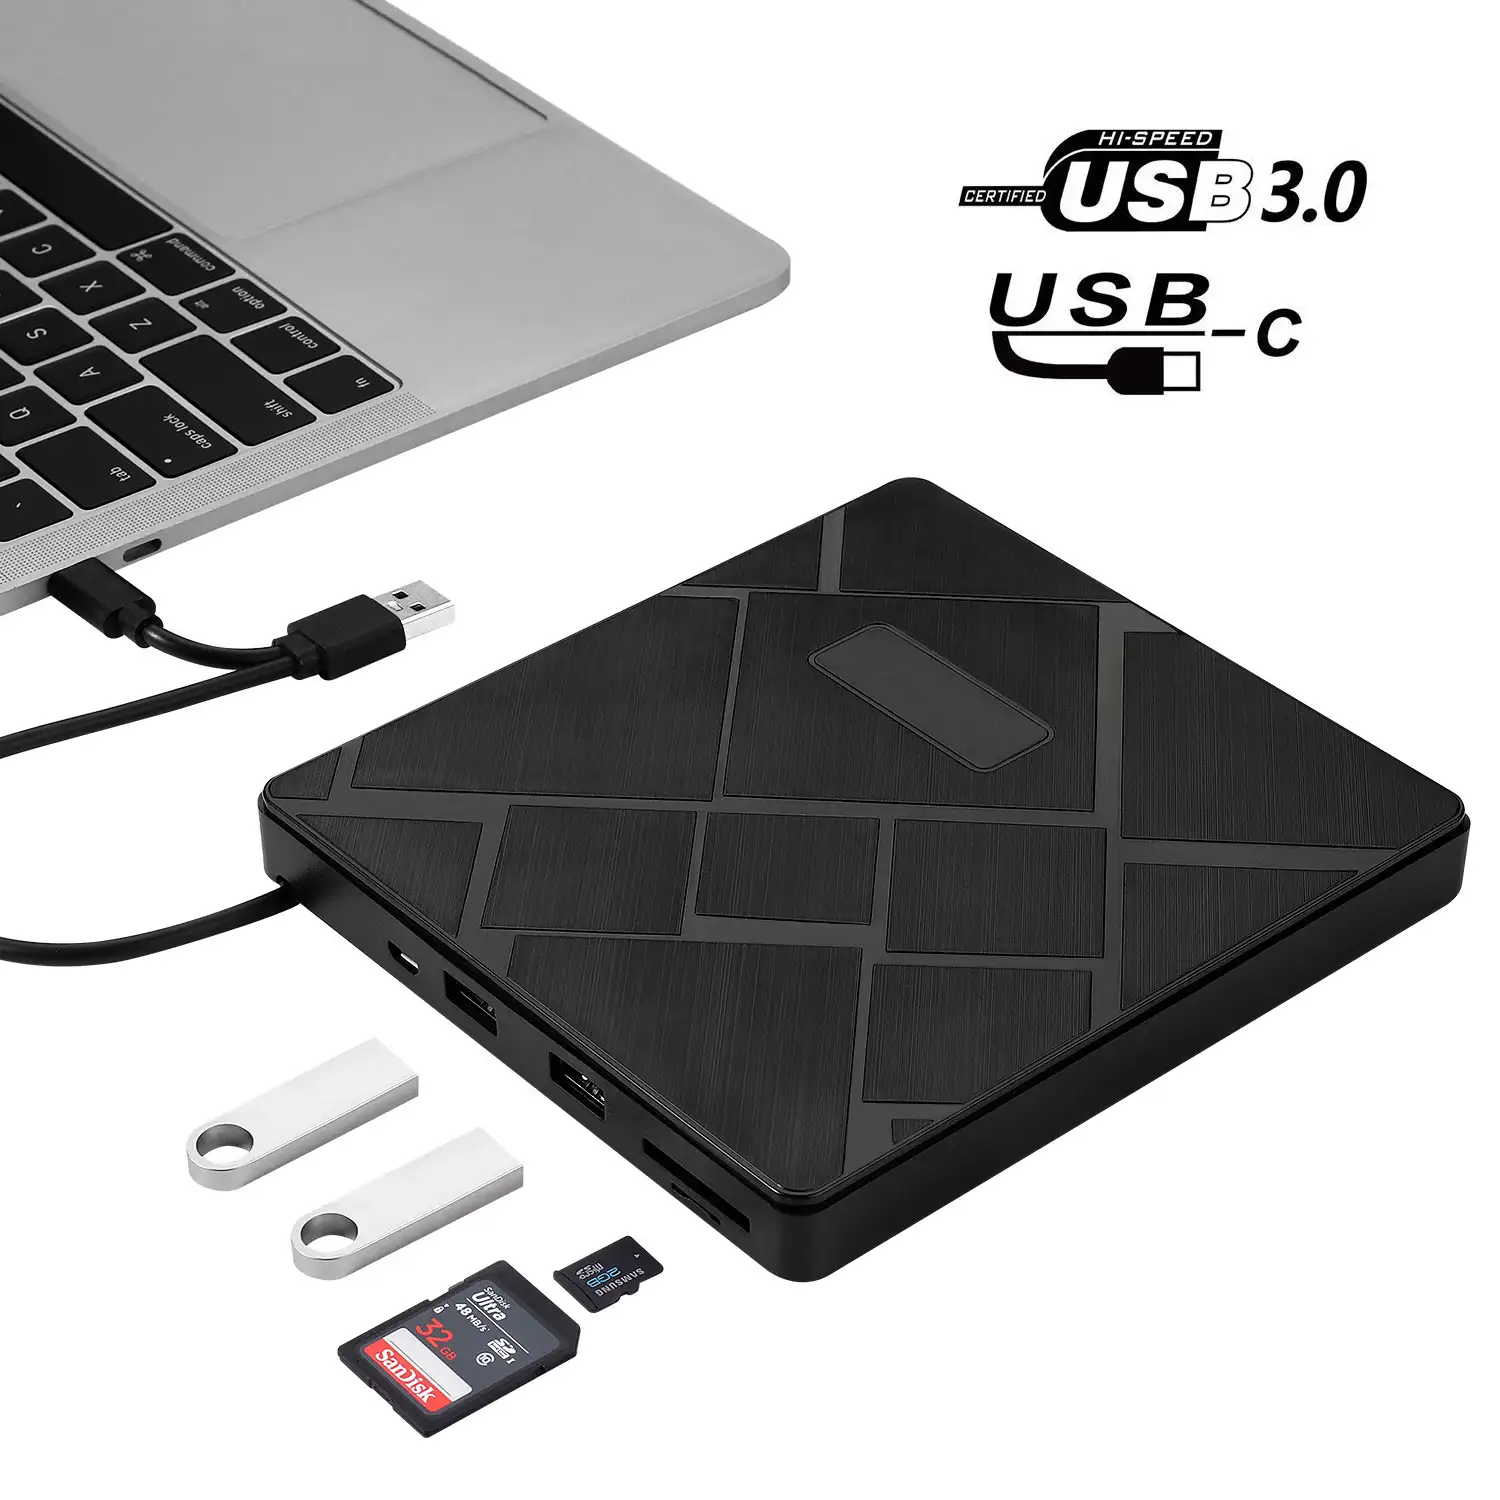 Lecteur/graveur DVD externe RW de Type C, idéal pour pc Portable, 2 ports USB, fente pour carte SD, port USB 3.0, idéal pour un bureau